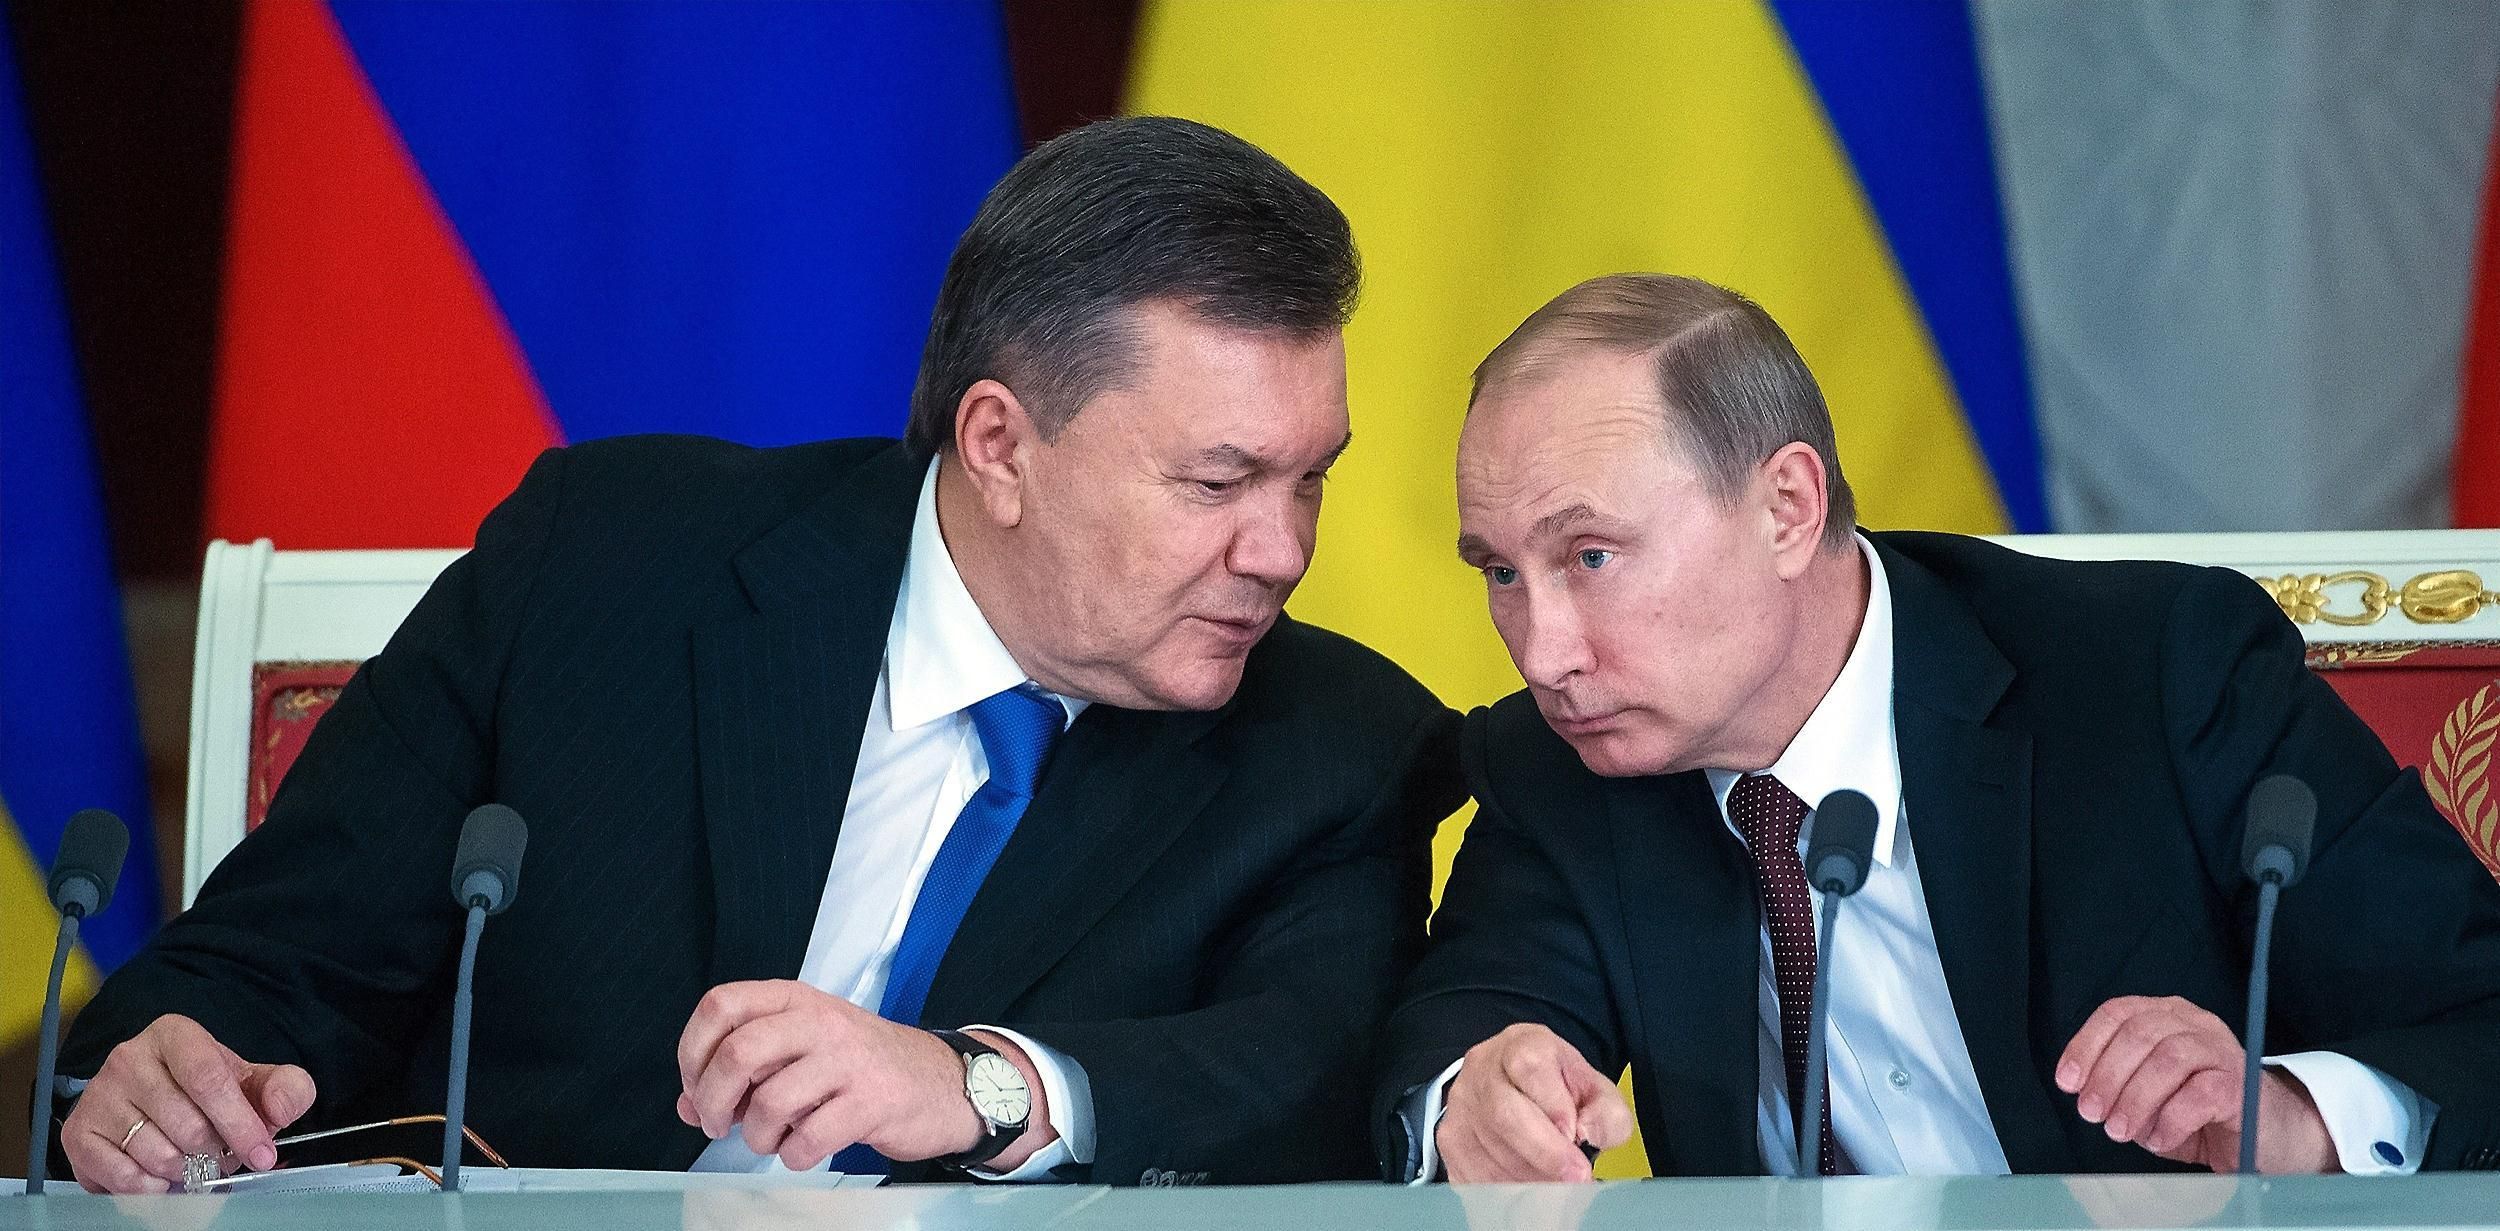 Россия, скорее всего, откажется выдать Януковича Украине, - источник